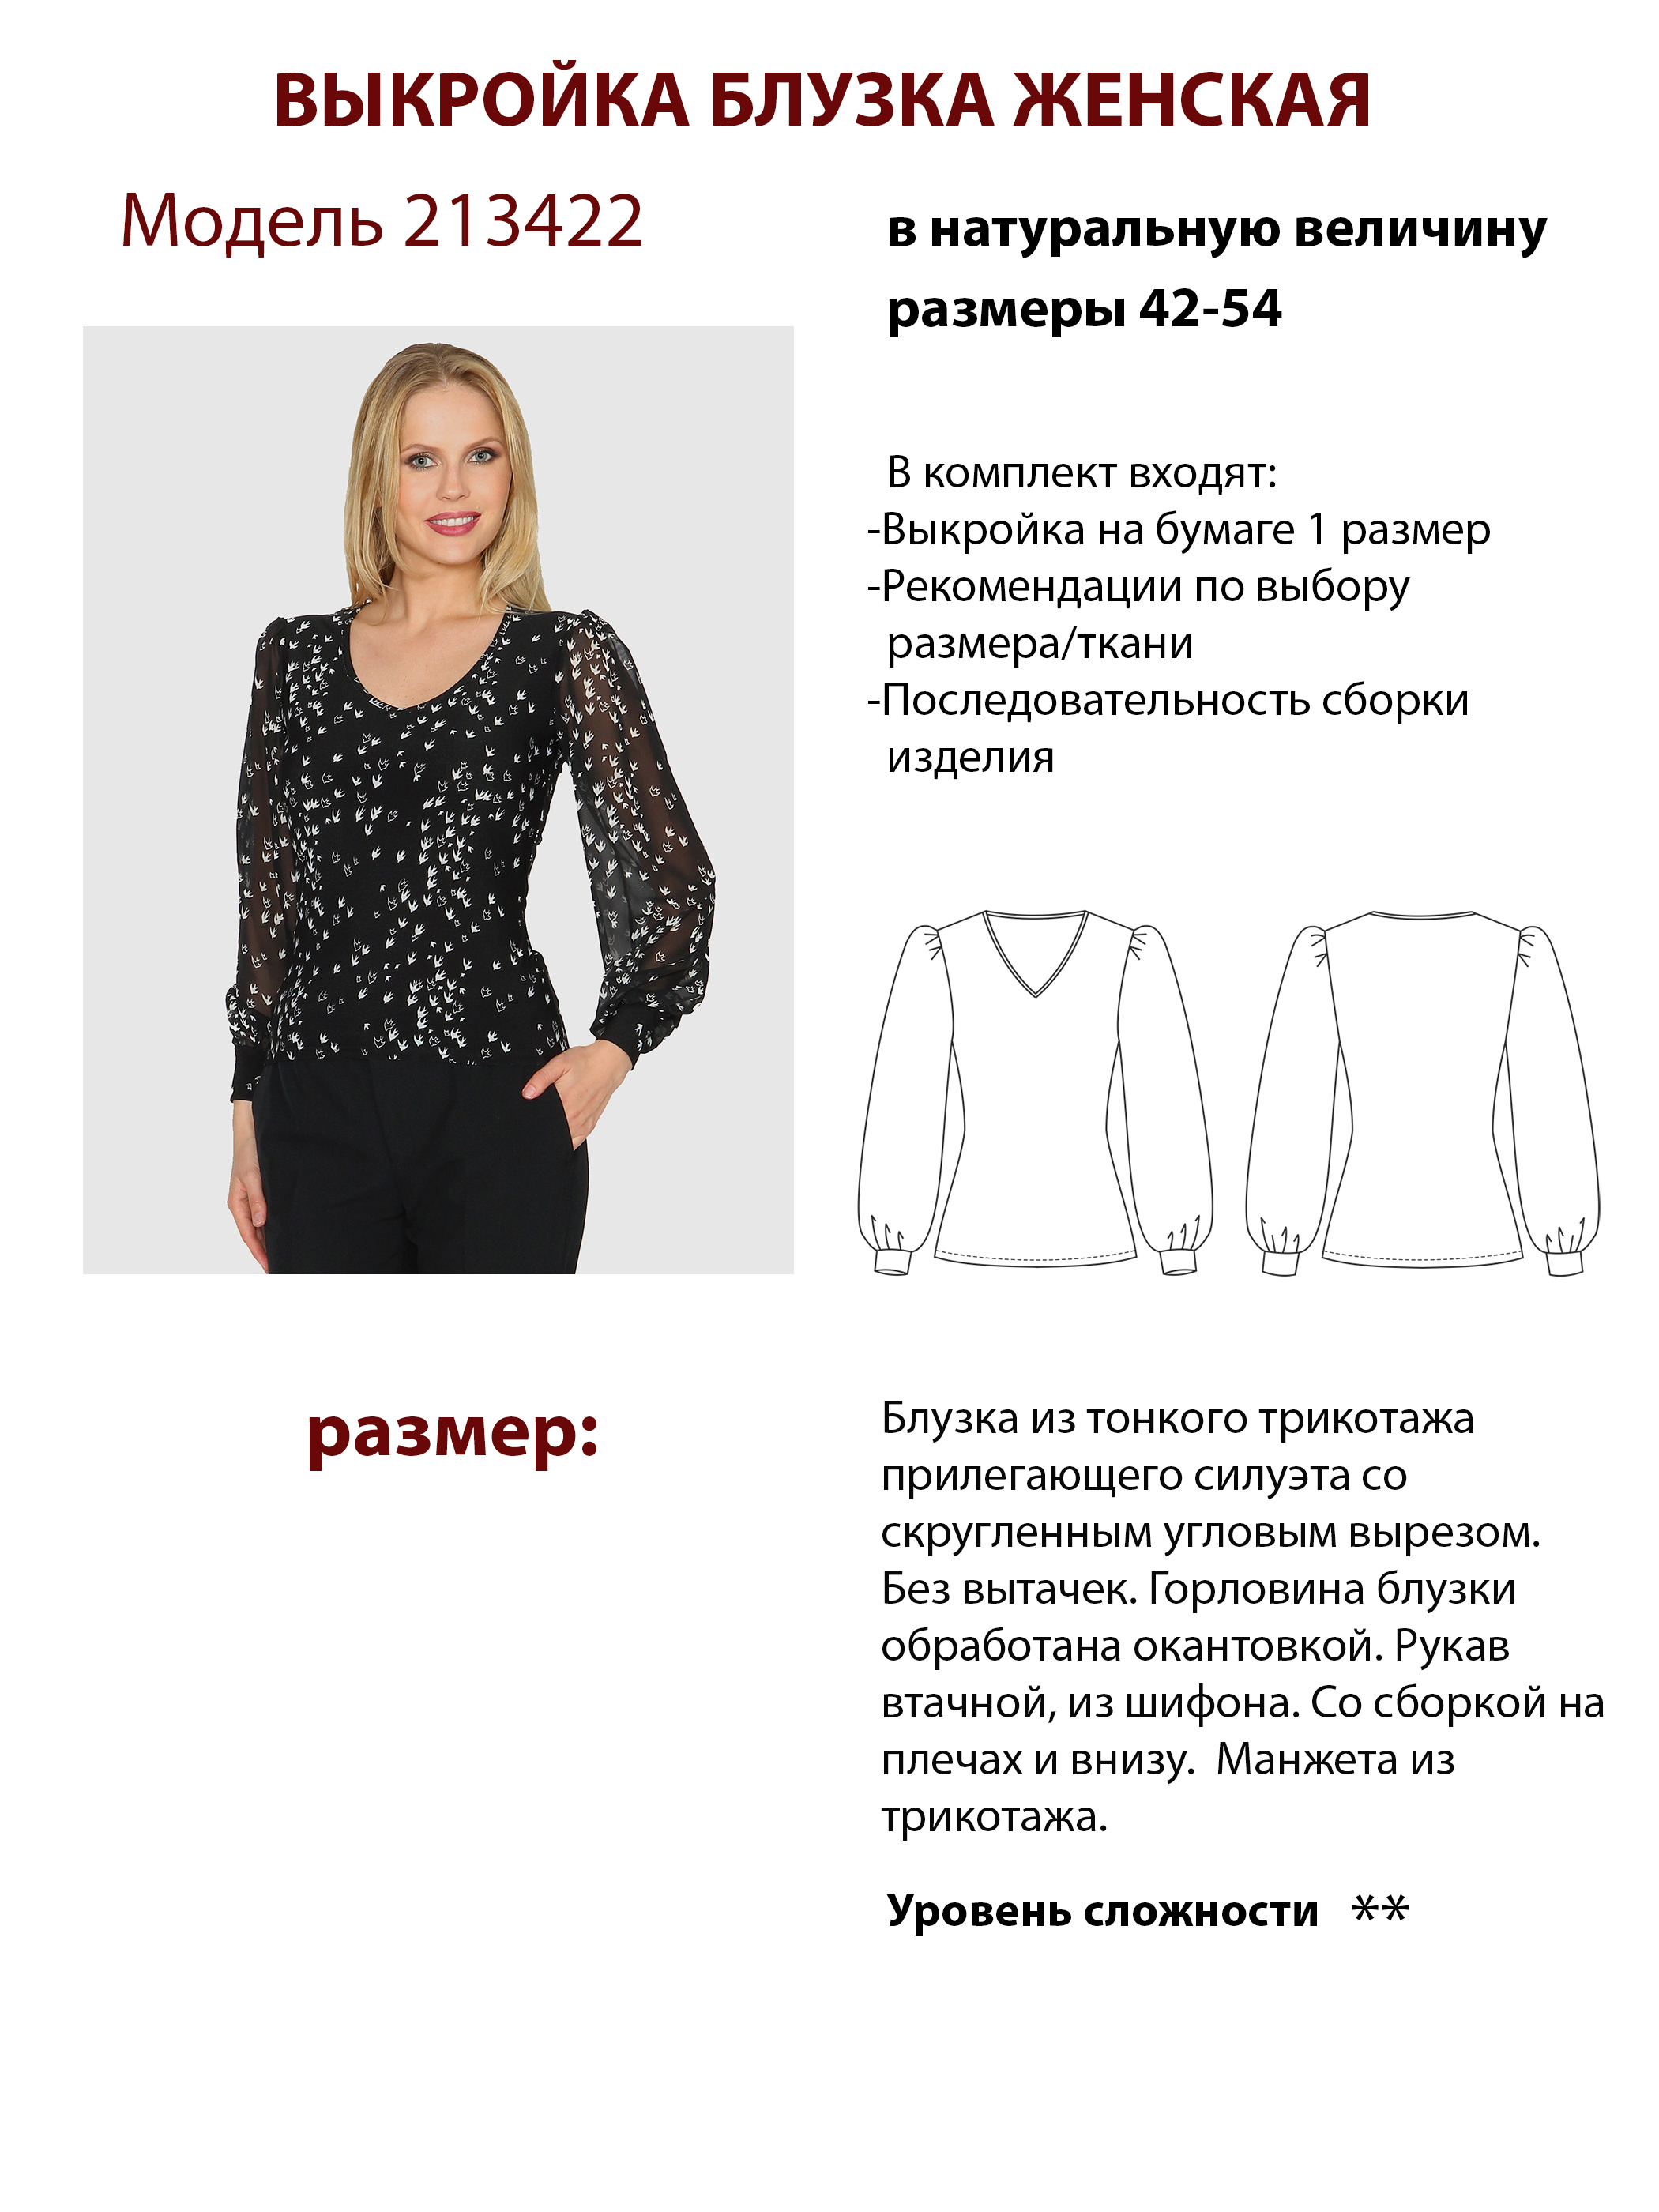 Простая блузка из шифона (выкройка) :: SYL.ru